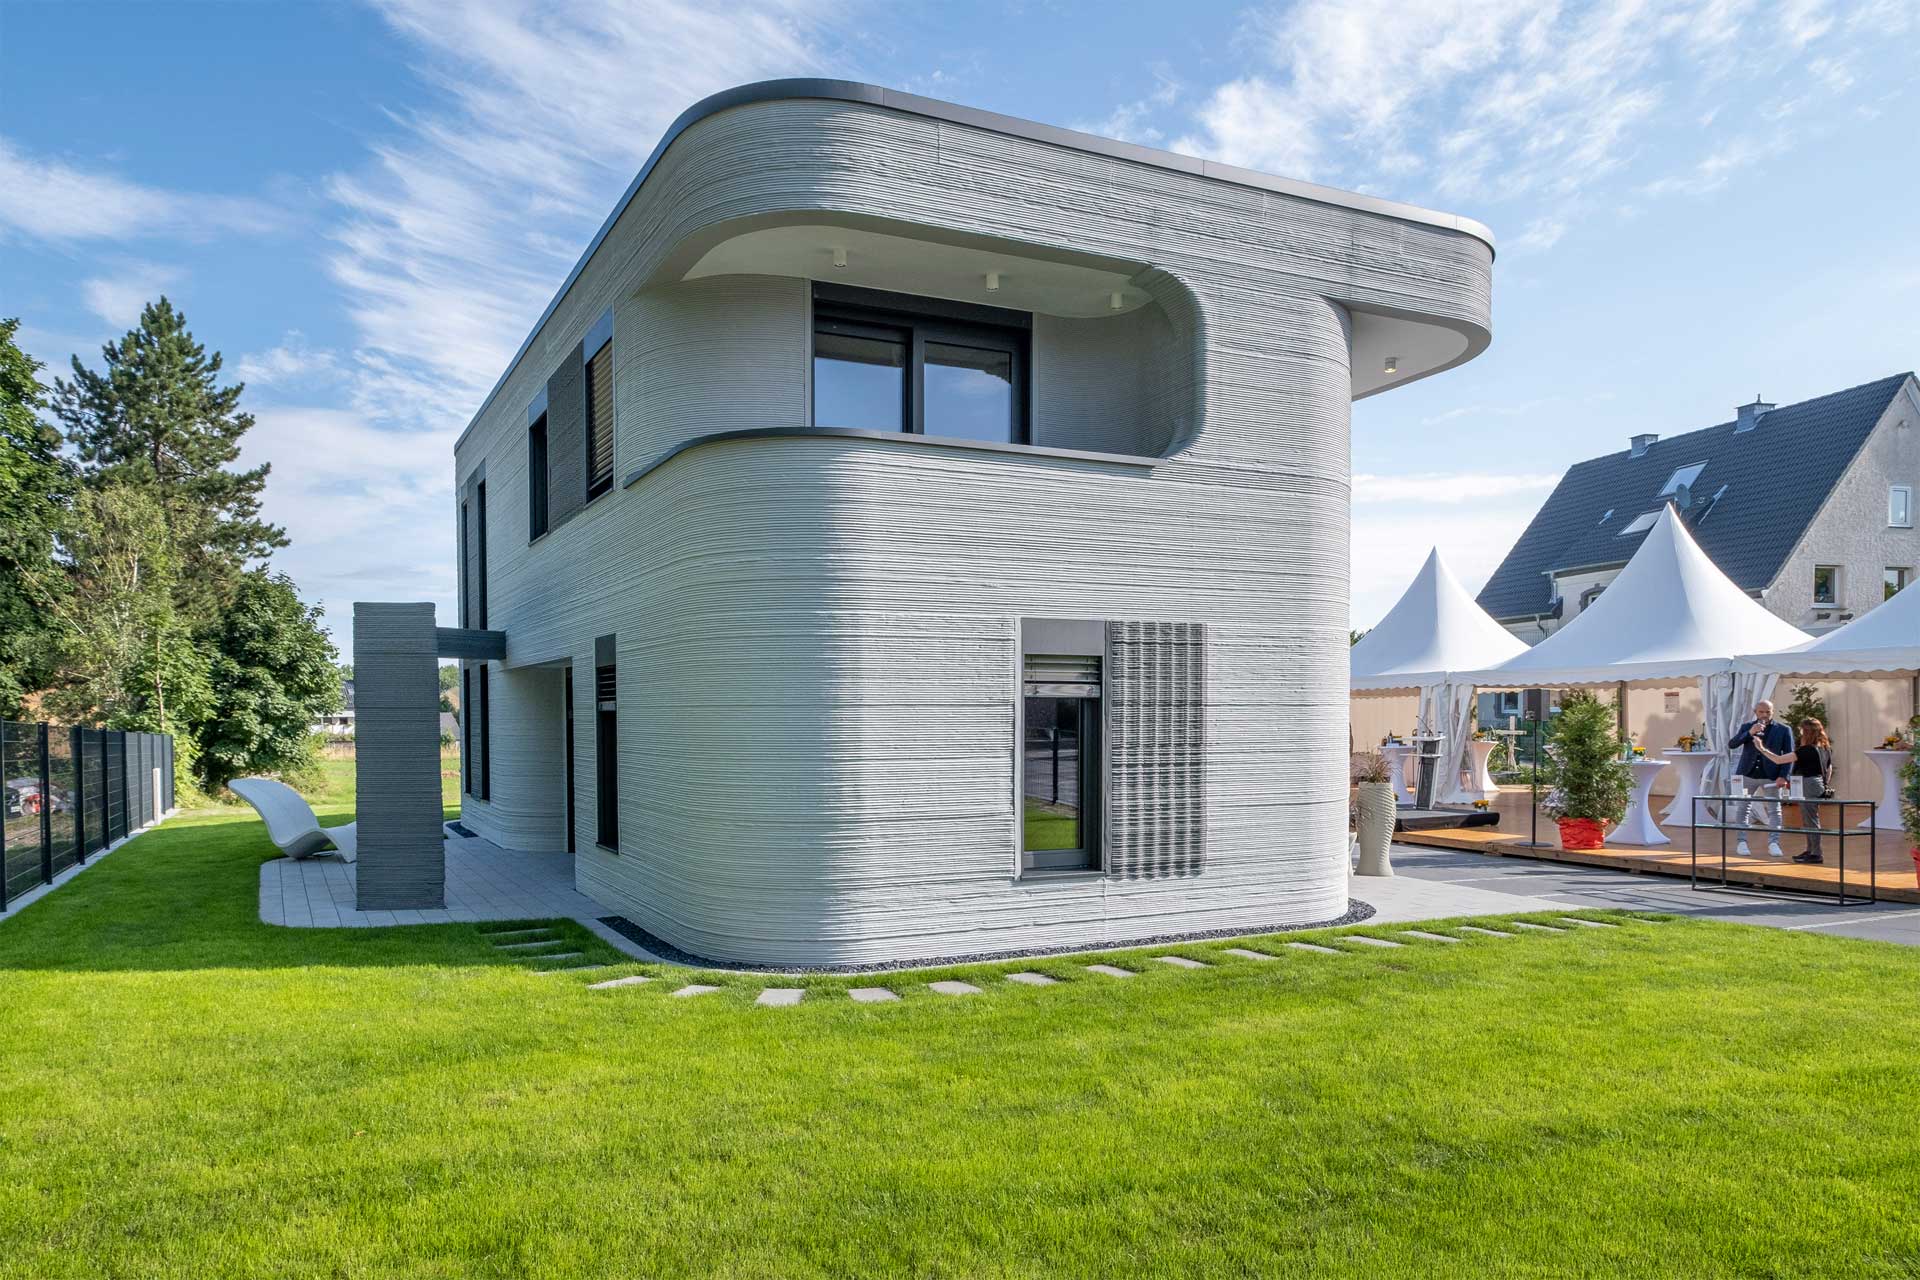 Modernes zweistöckiges Haus mit geschwungenem Design und strukturierter Außenfassade, auf gepflegtem Rasen unter blauem Himmel